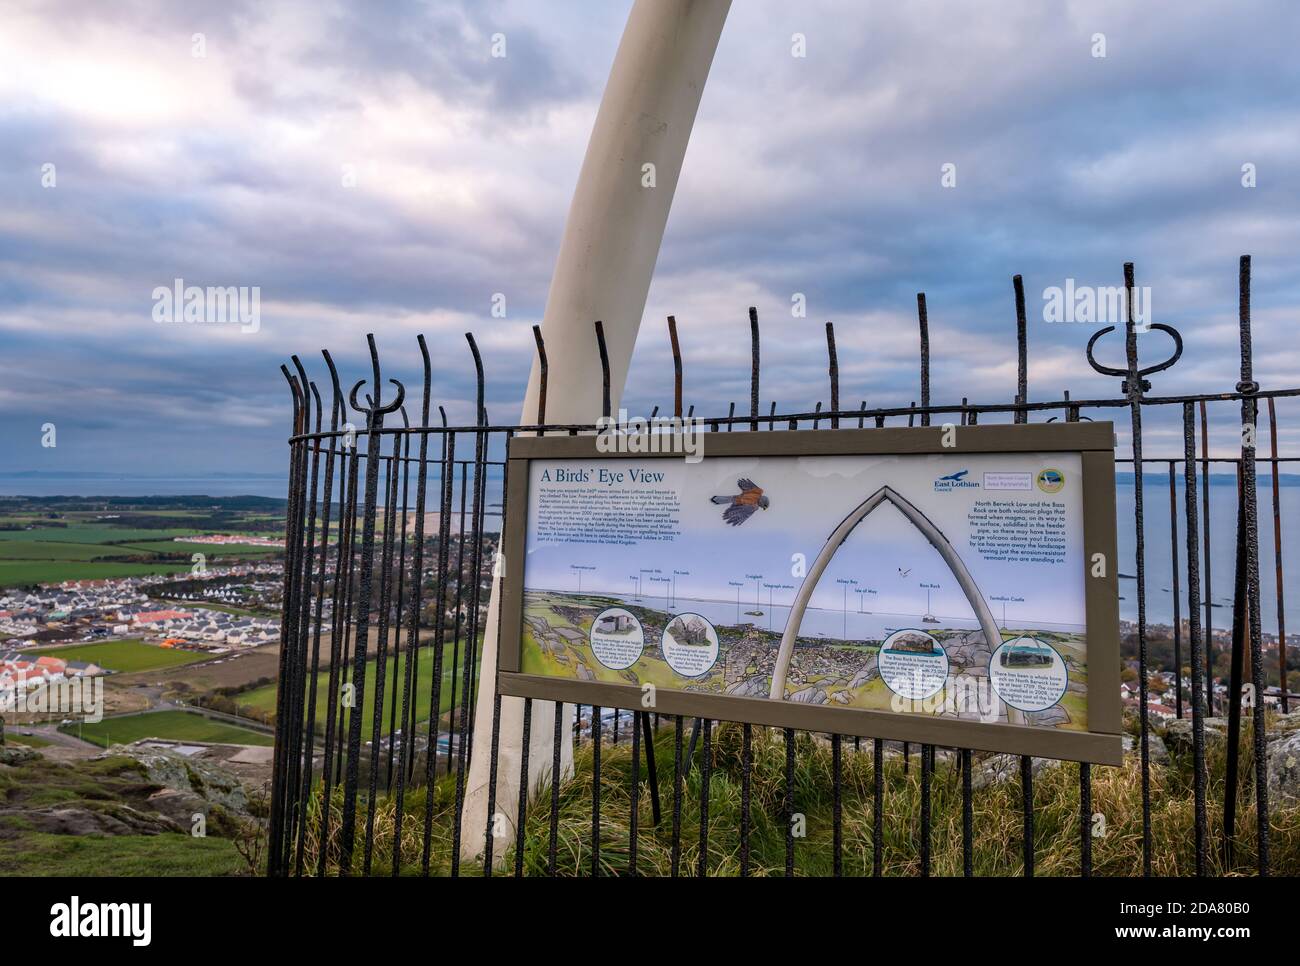 Informationstafel über Berwick Law ViewPoint mit künstlichem Whalebone Landmark Arch, North Berwick, East Lothian, Schottland, Großbritannien Stockfoto